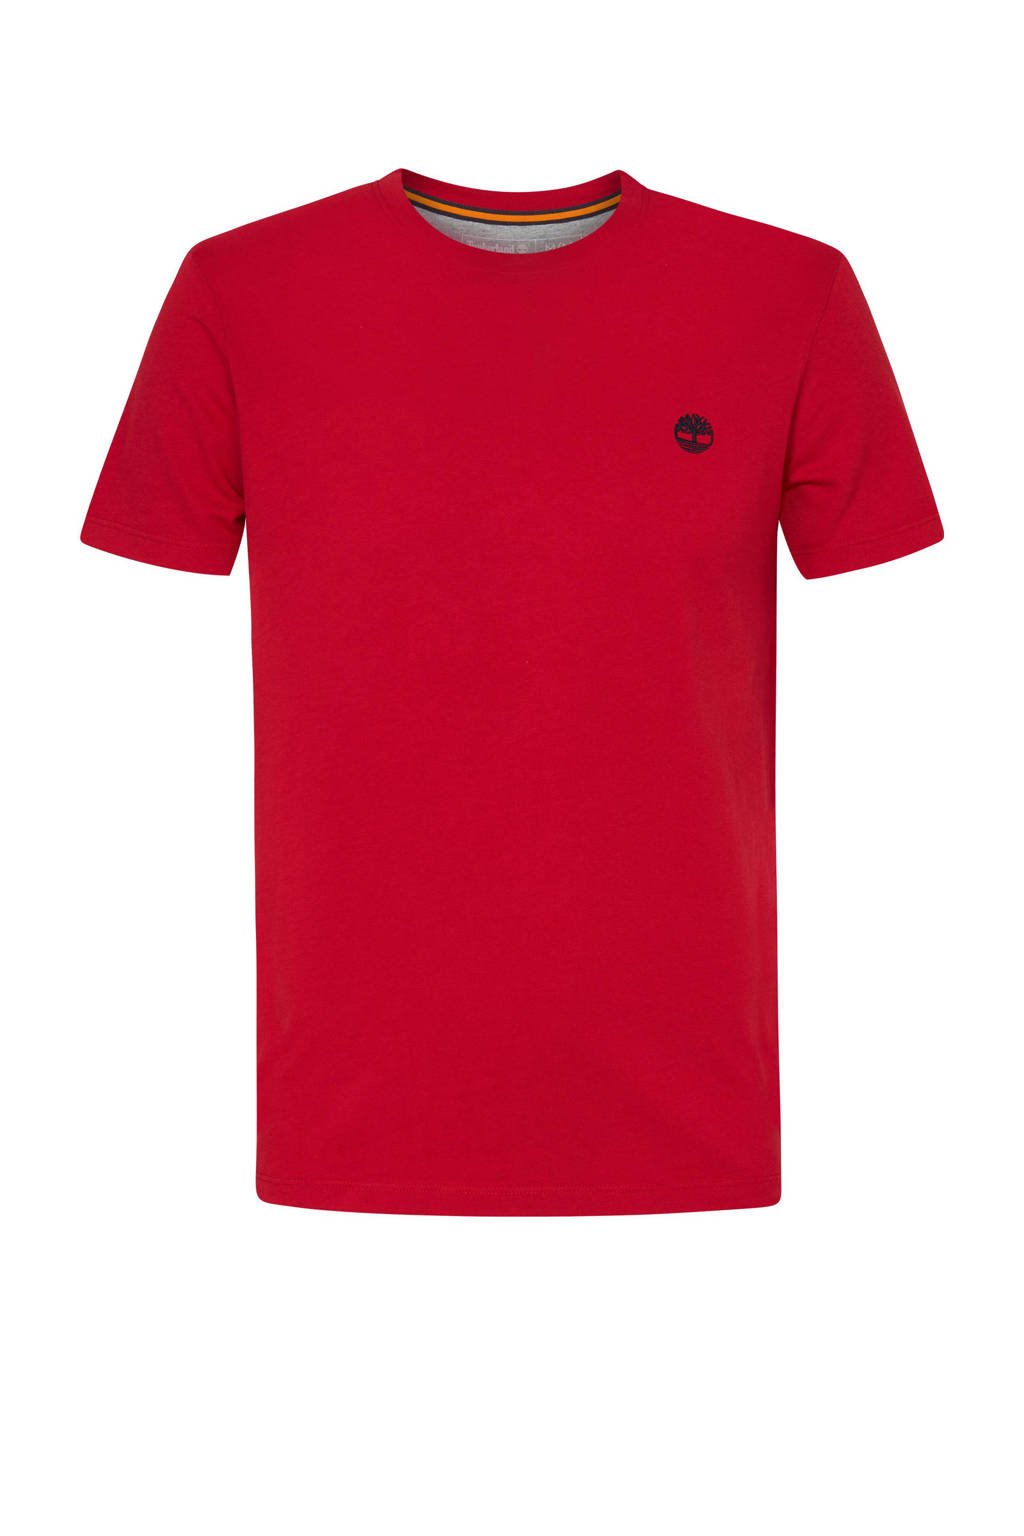 Rode heren Timberland T-shirt van biologisch katoen met logo dessin, korte mouwen en ronde hals